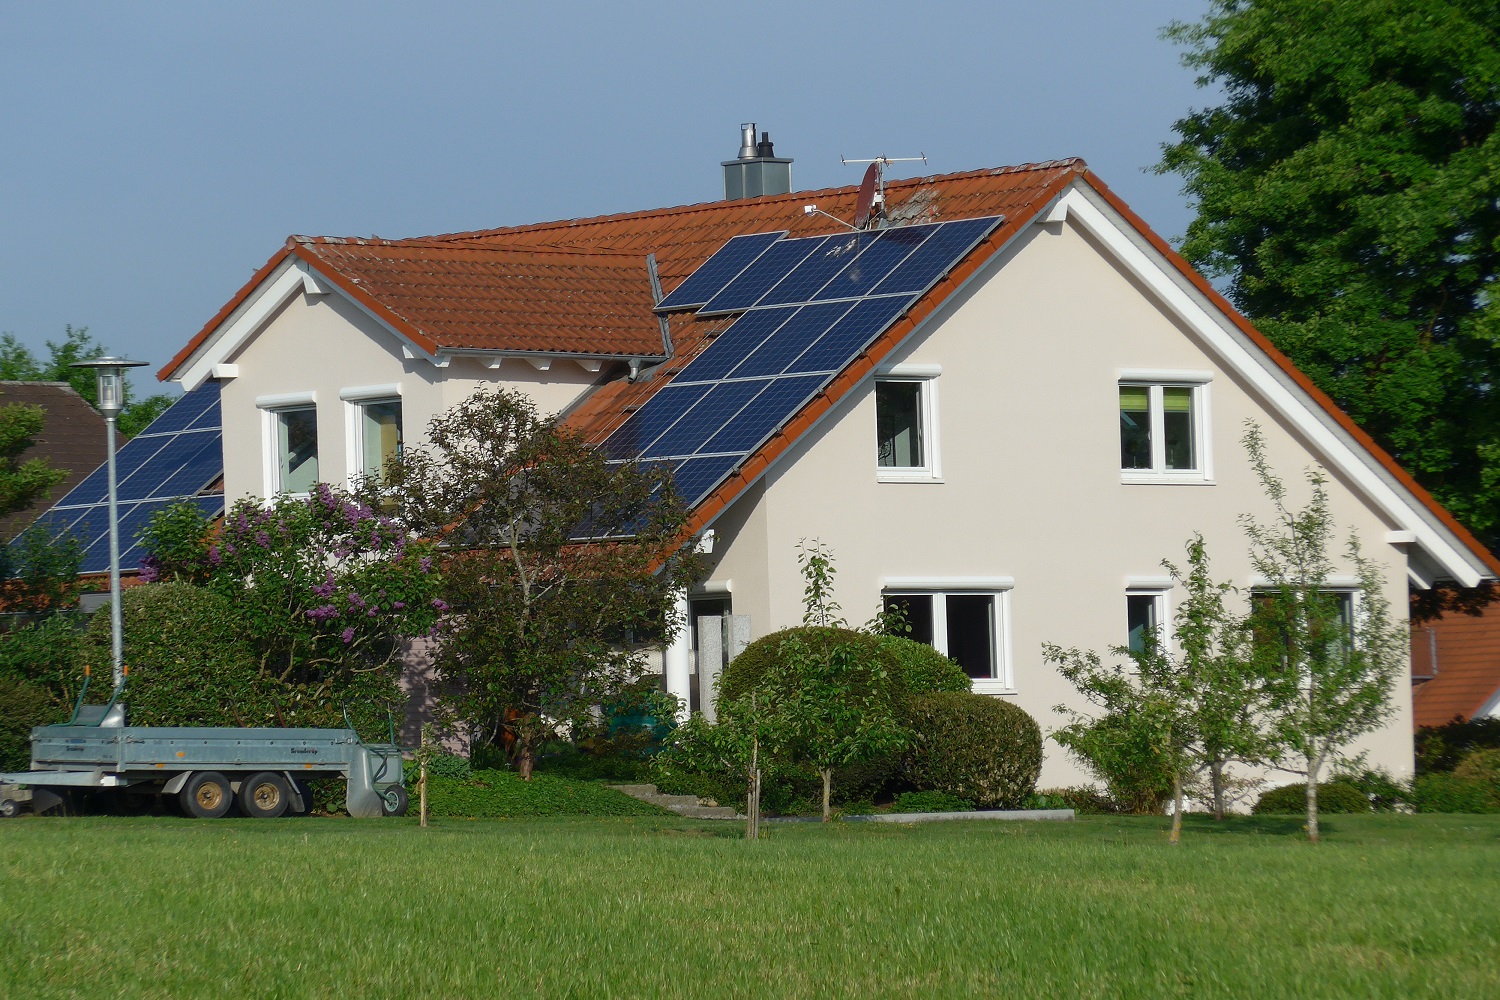 Einkommenssteuerpflicht für kleine PV-Anlagen entfällt - energiezukunft